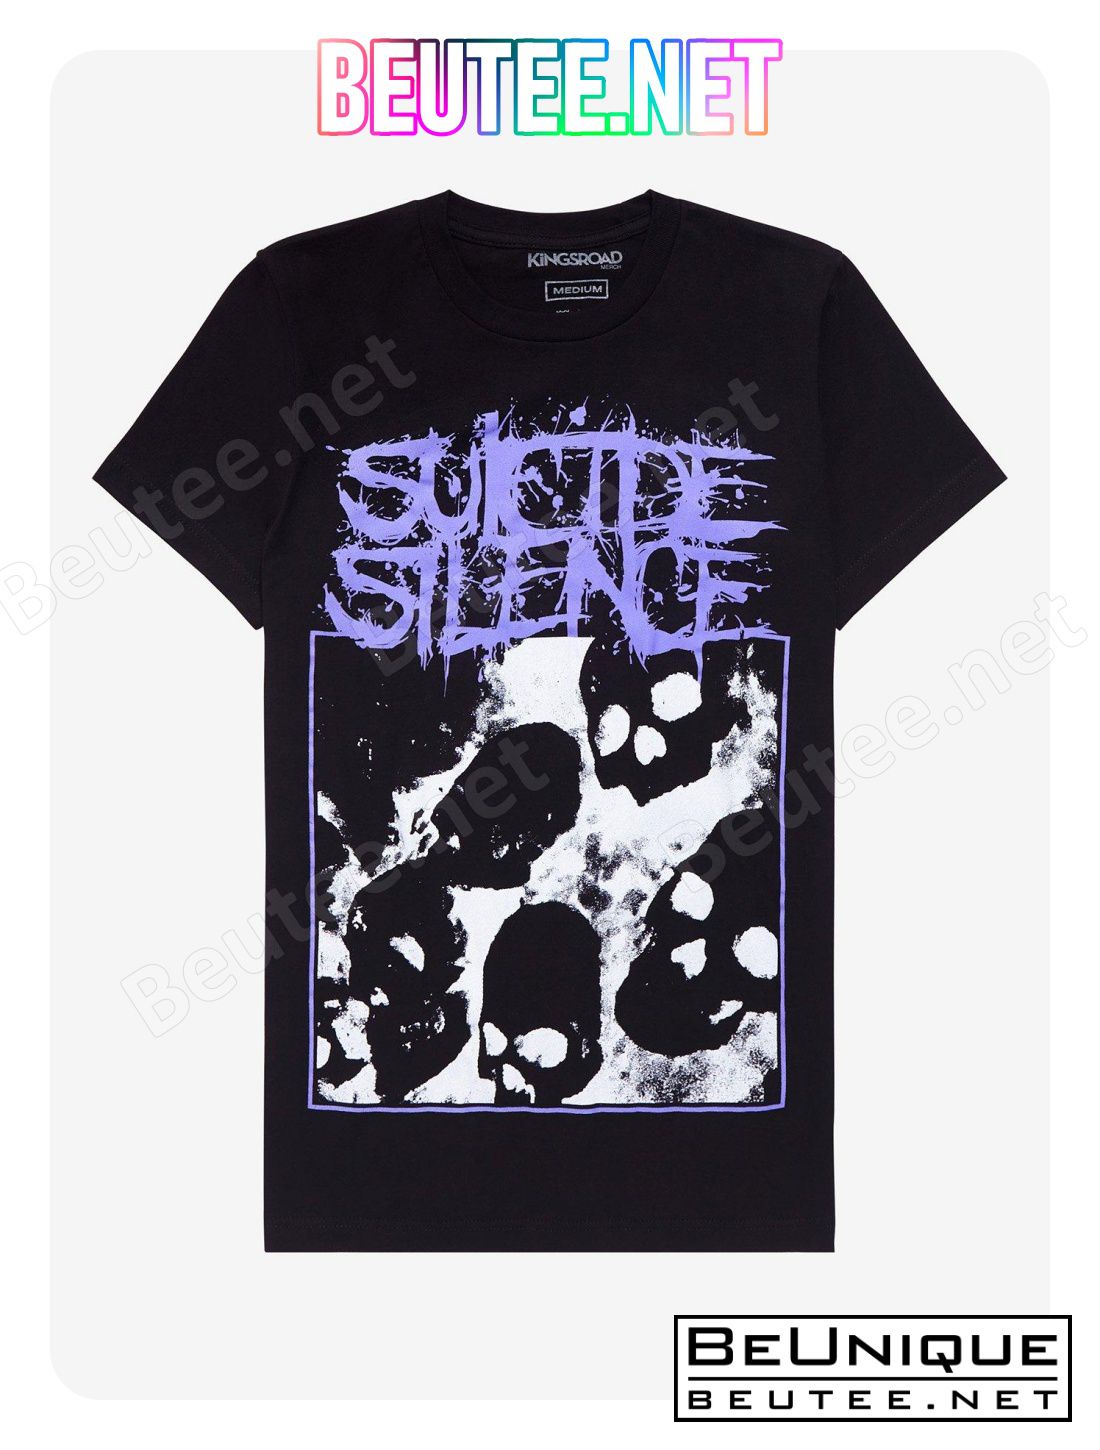 Suicide Silence Skulls Girls T-Shirt